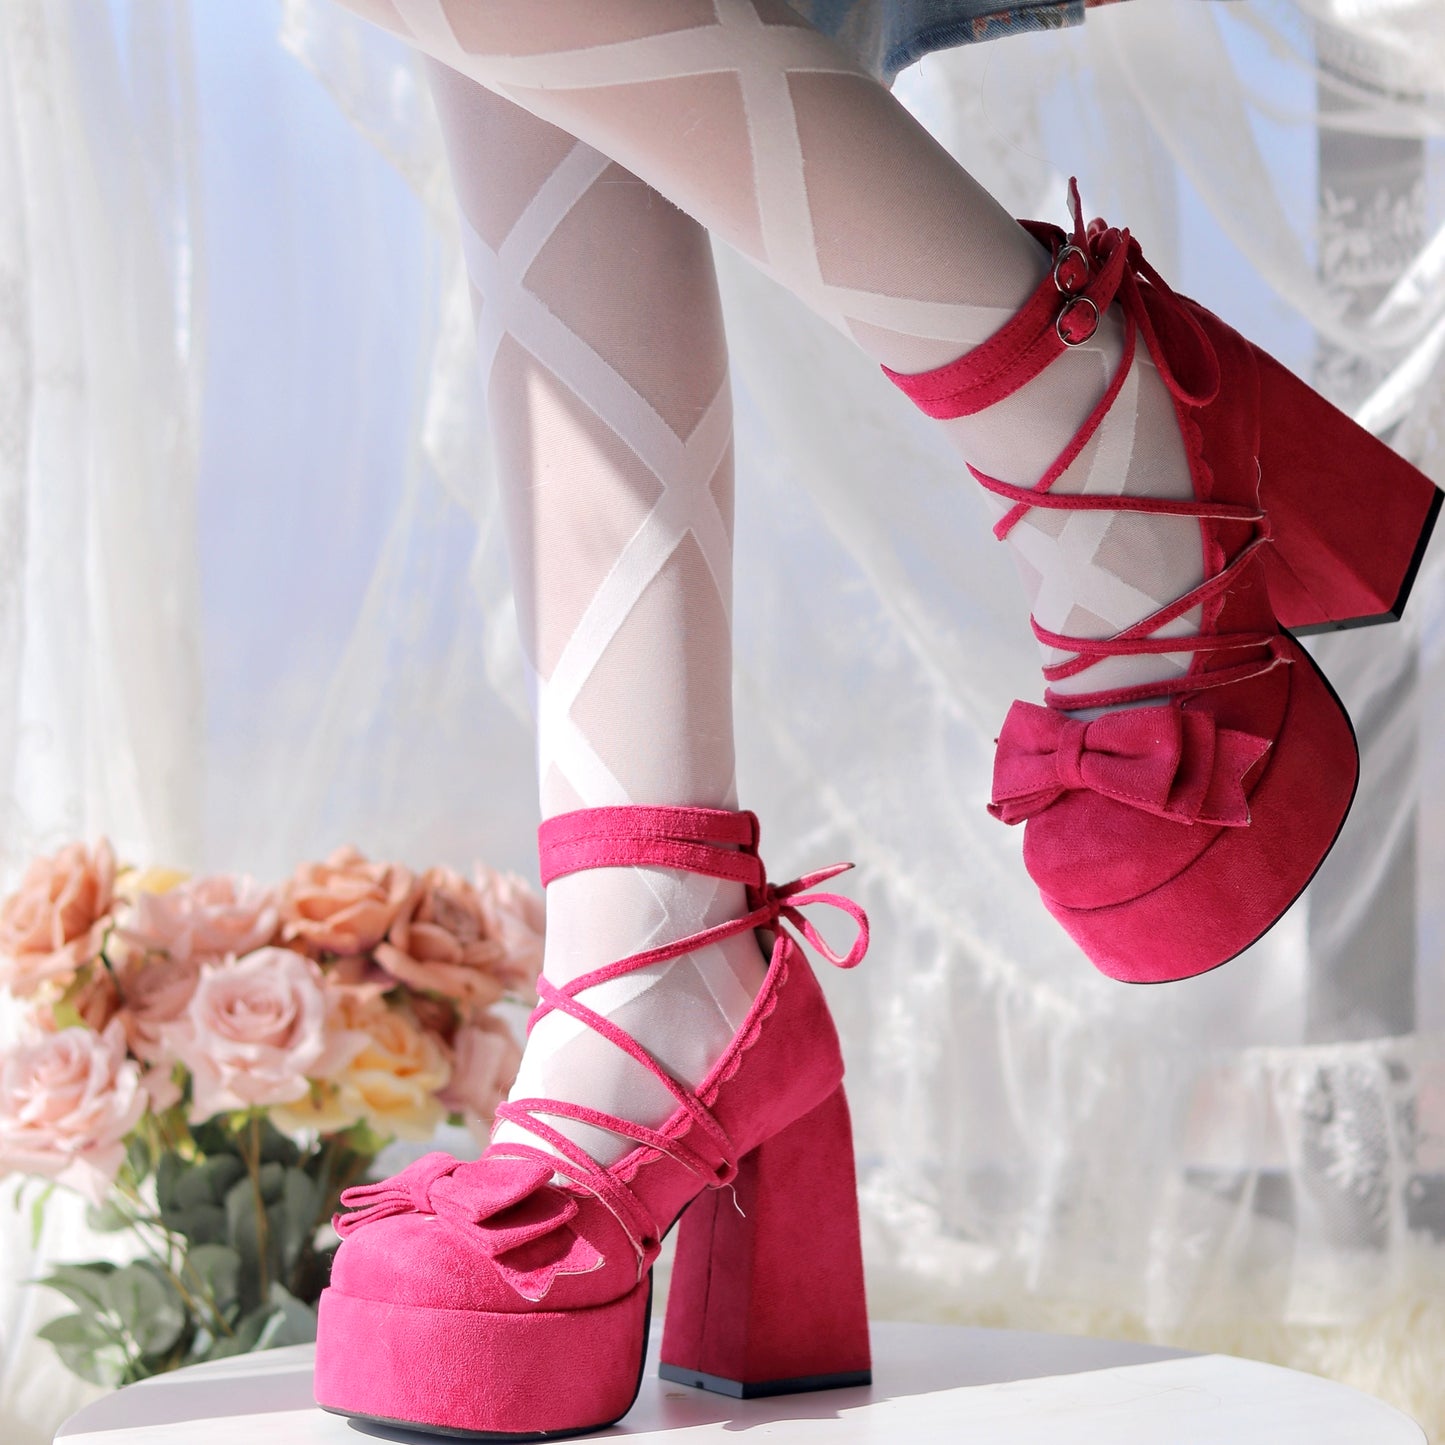 ♡ Confession Rose ♡ - Бархатные туфли Долли на высоких каблуках